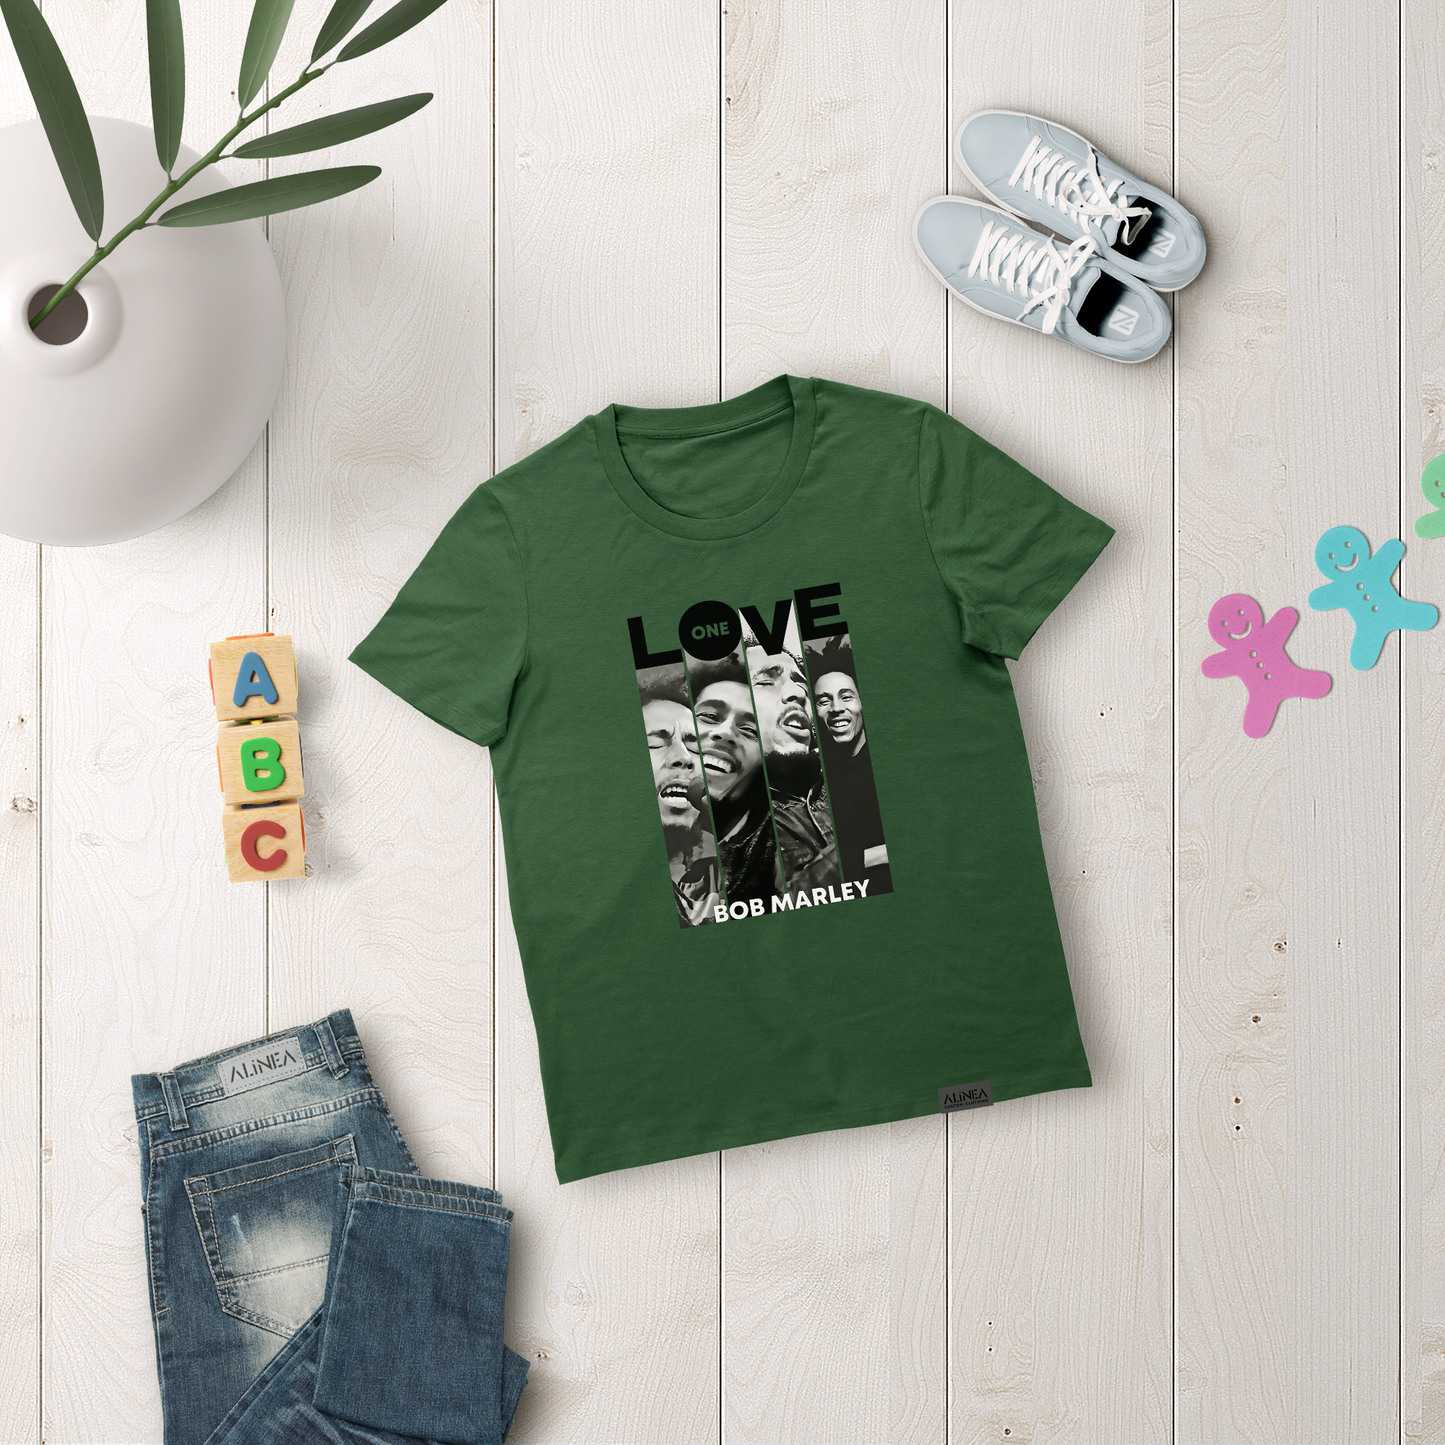 Bob Marley One Love Tshirt Kids